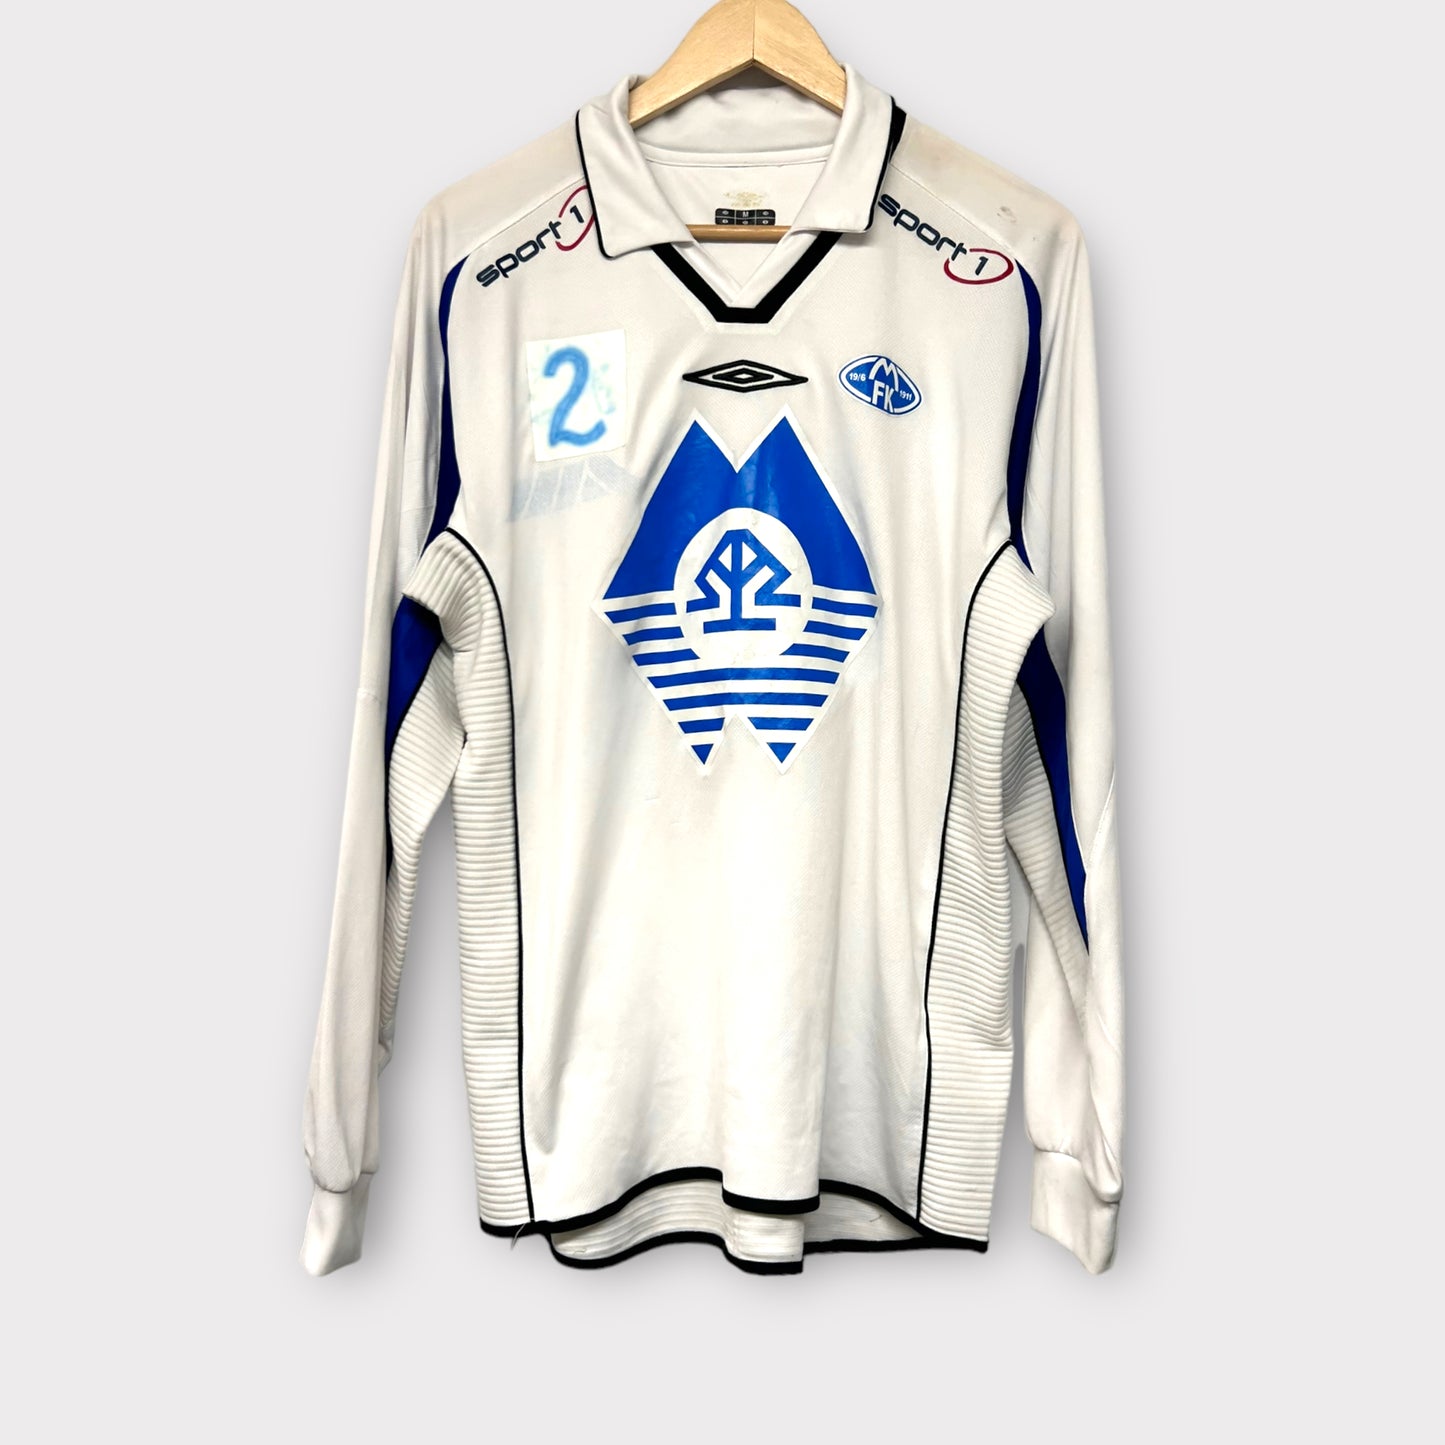 FK Molde 2006/07 Match-Issued Away Shirt #2 (Medium)